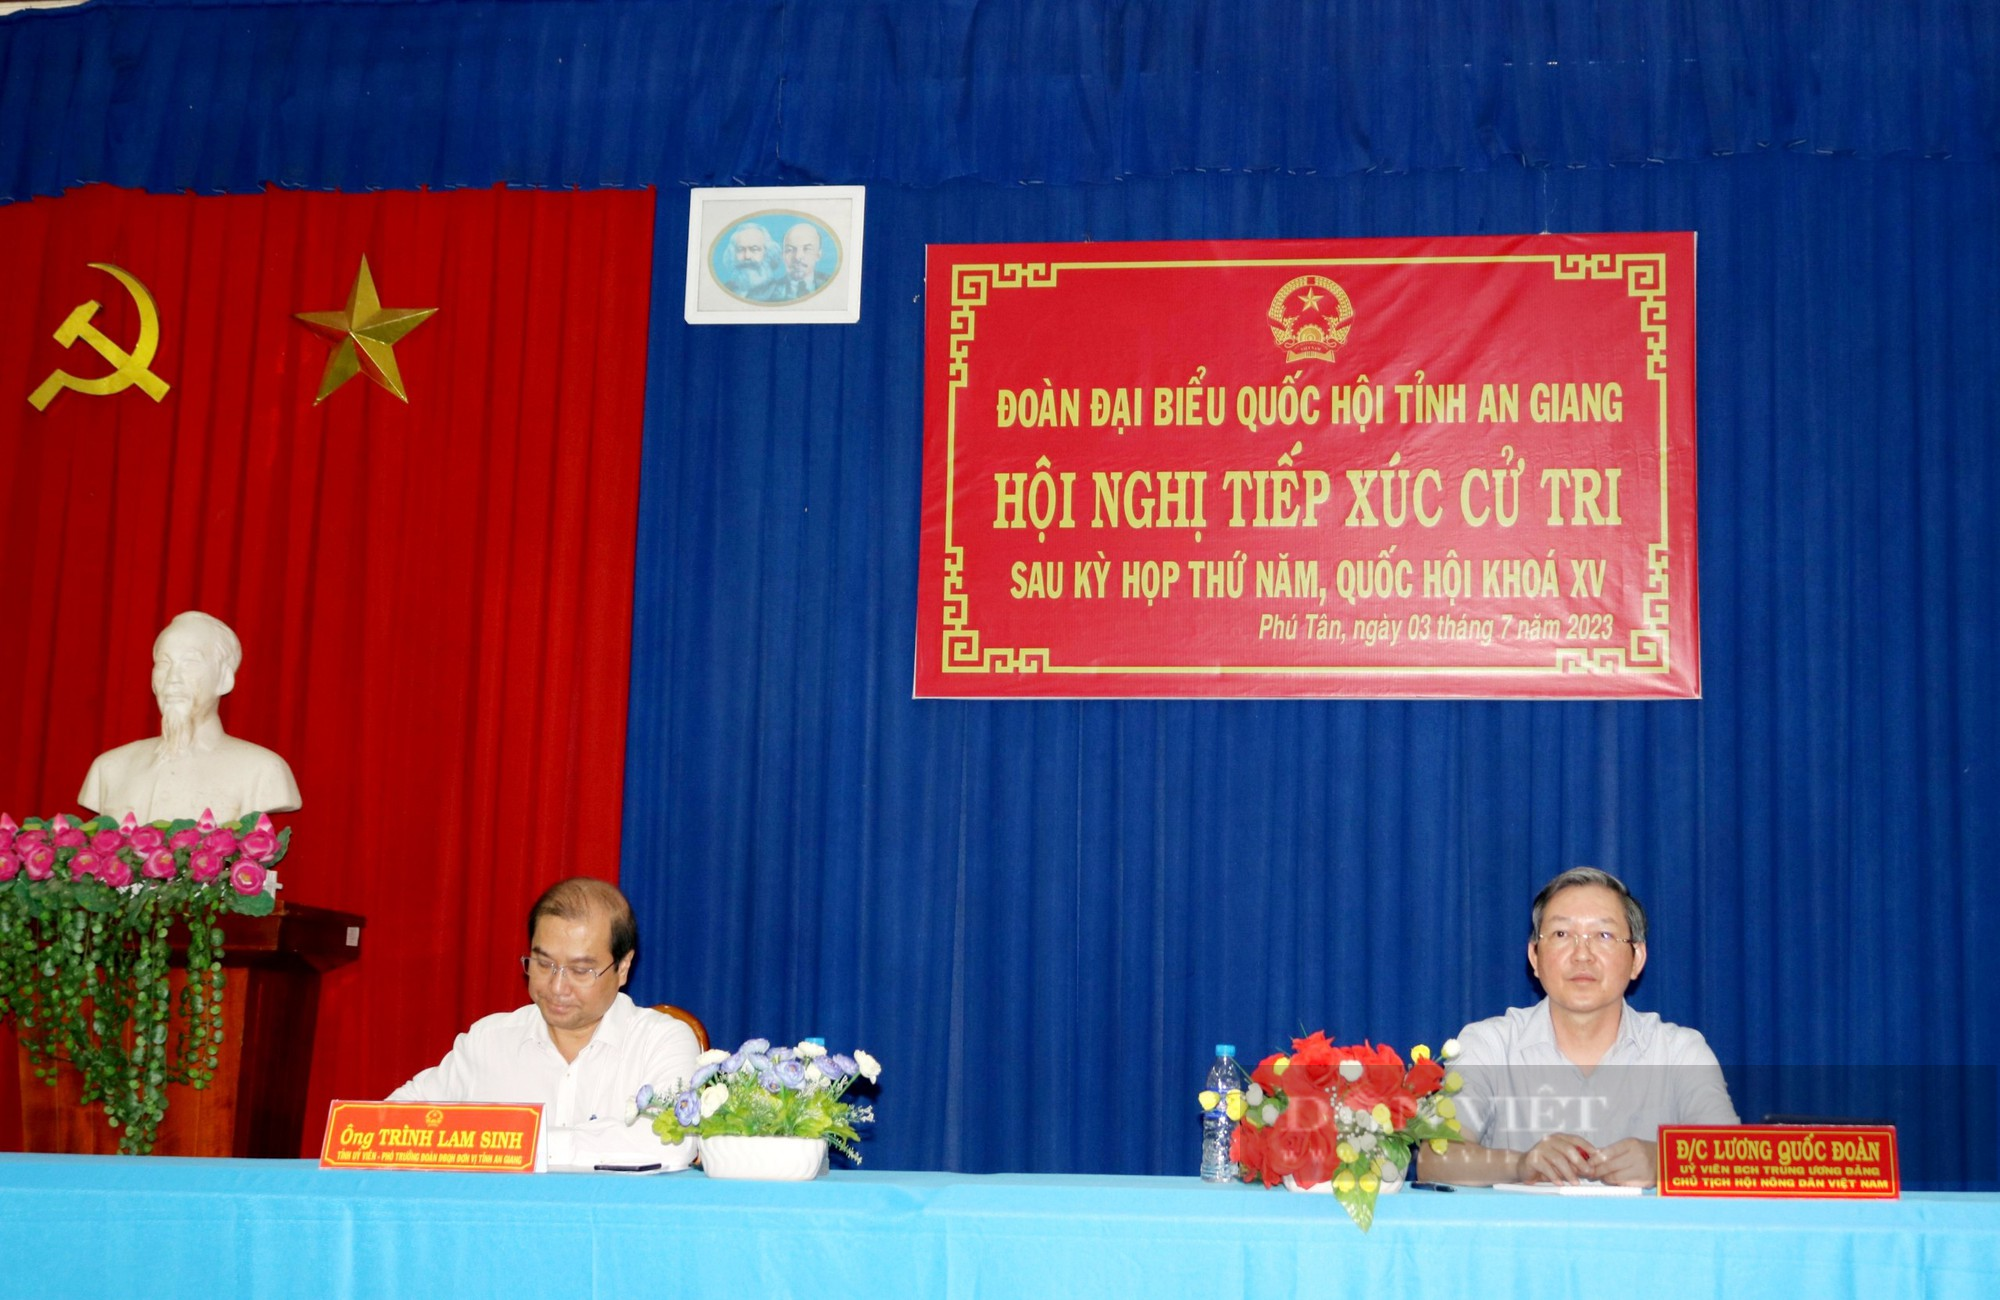 Chủ tịch Trung ương Hội NDVN Lương Quốc Đoàn và đoàn đại biểu Quốc hội tỉnh An Giang tiếp xúc cử tri huyện Phú Tân- Ảnh 1.